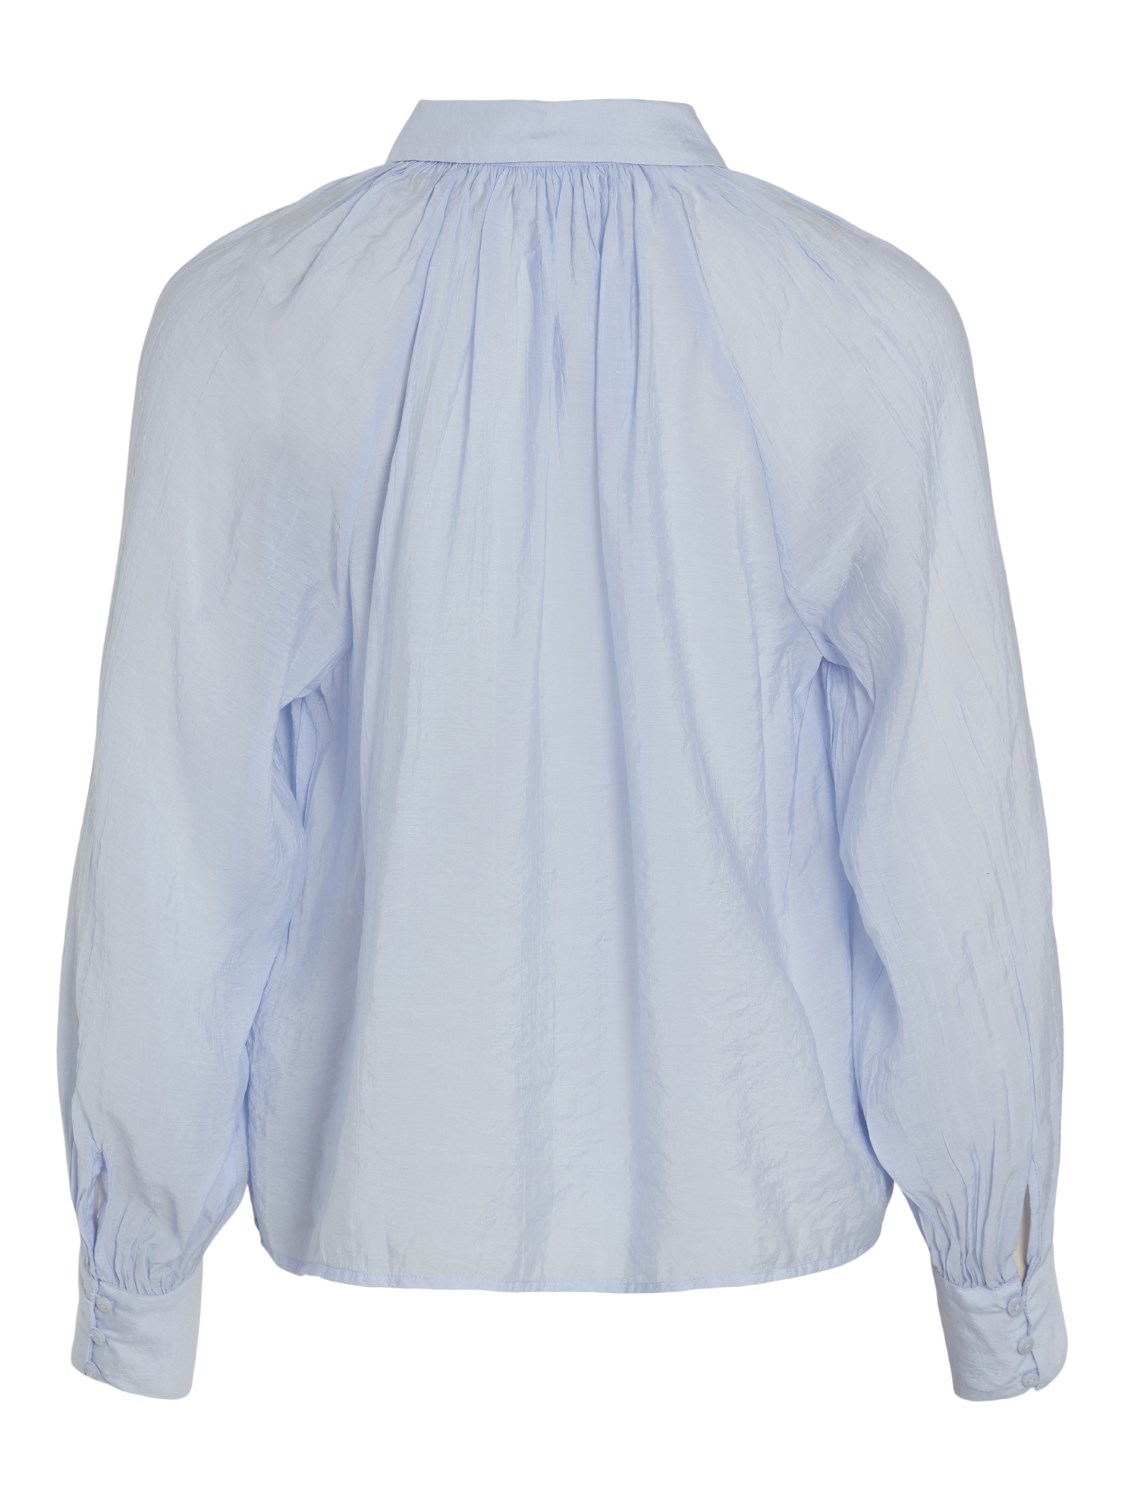 Blusa Nabia en color azul con detalle de plisado en el cuello. Modelo 14093576 de vila.